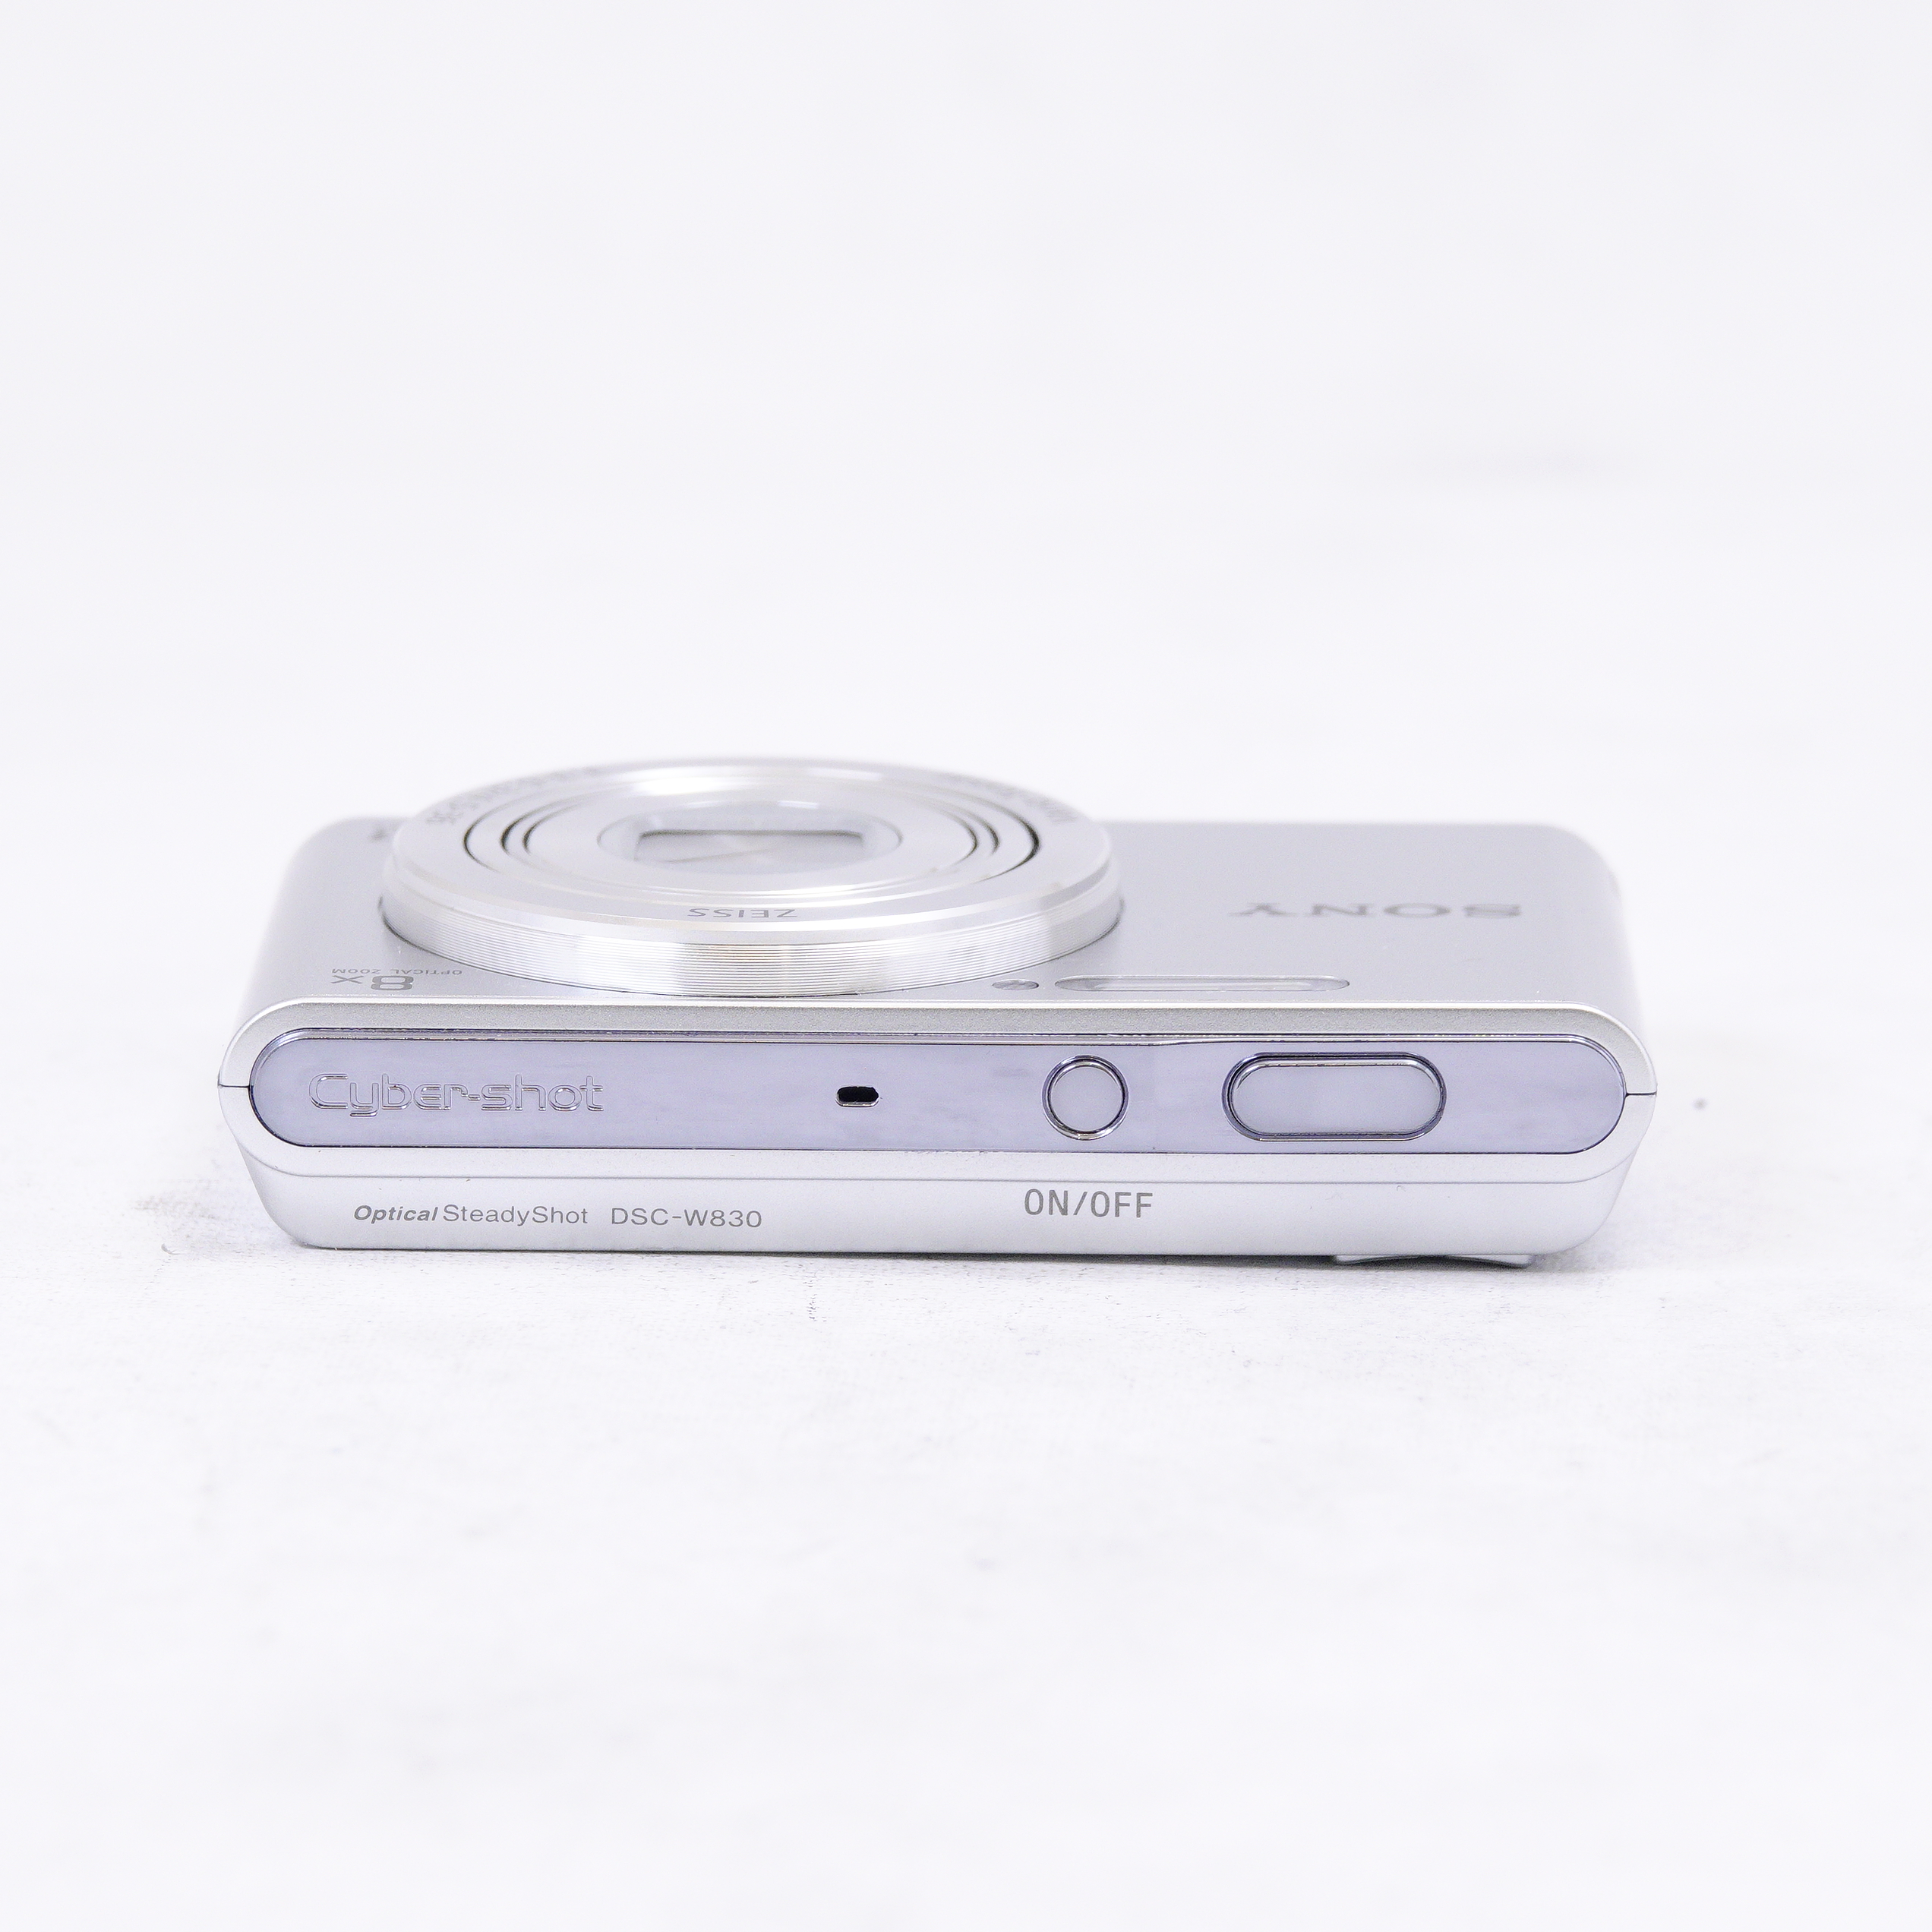 Cámara Digital Cybershot Sony DSC-W830 zoom óptico 8x 20.1 MP Plata